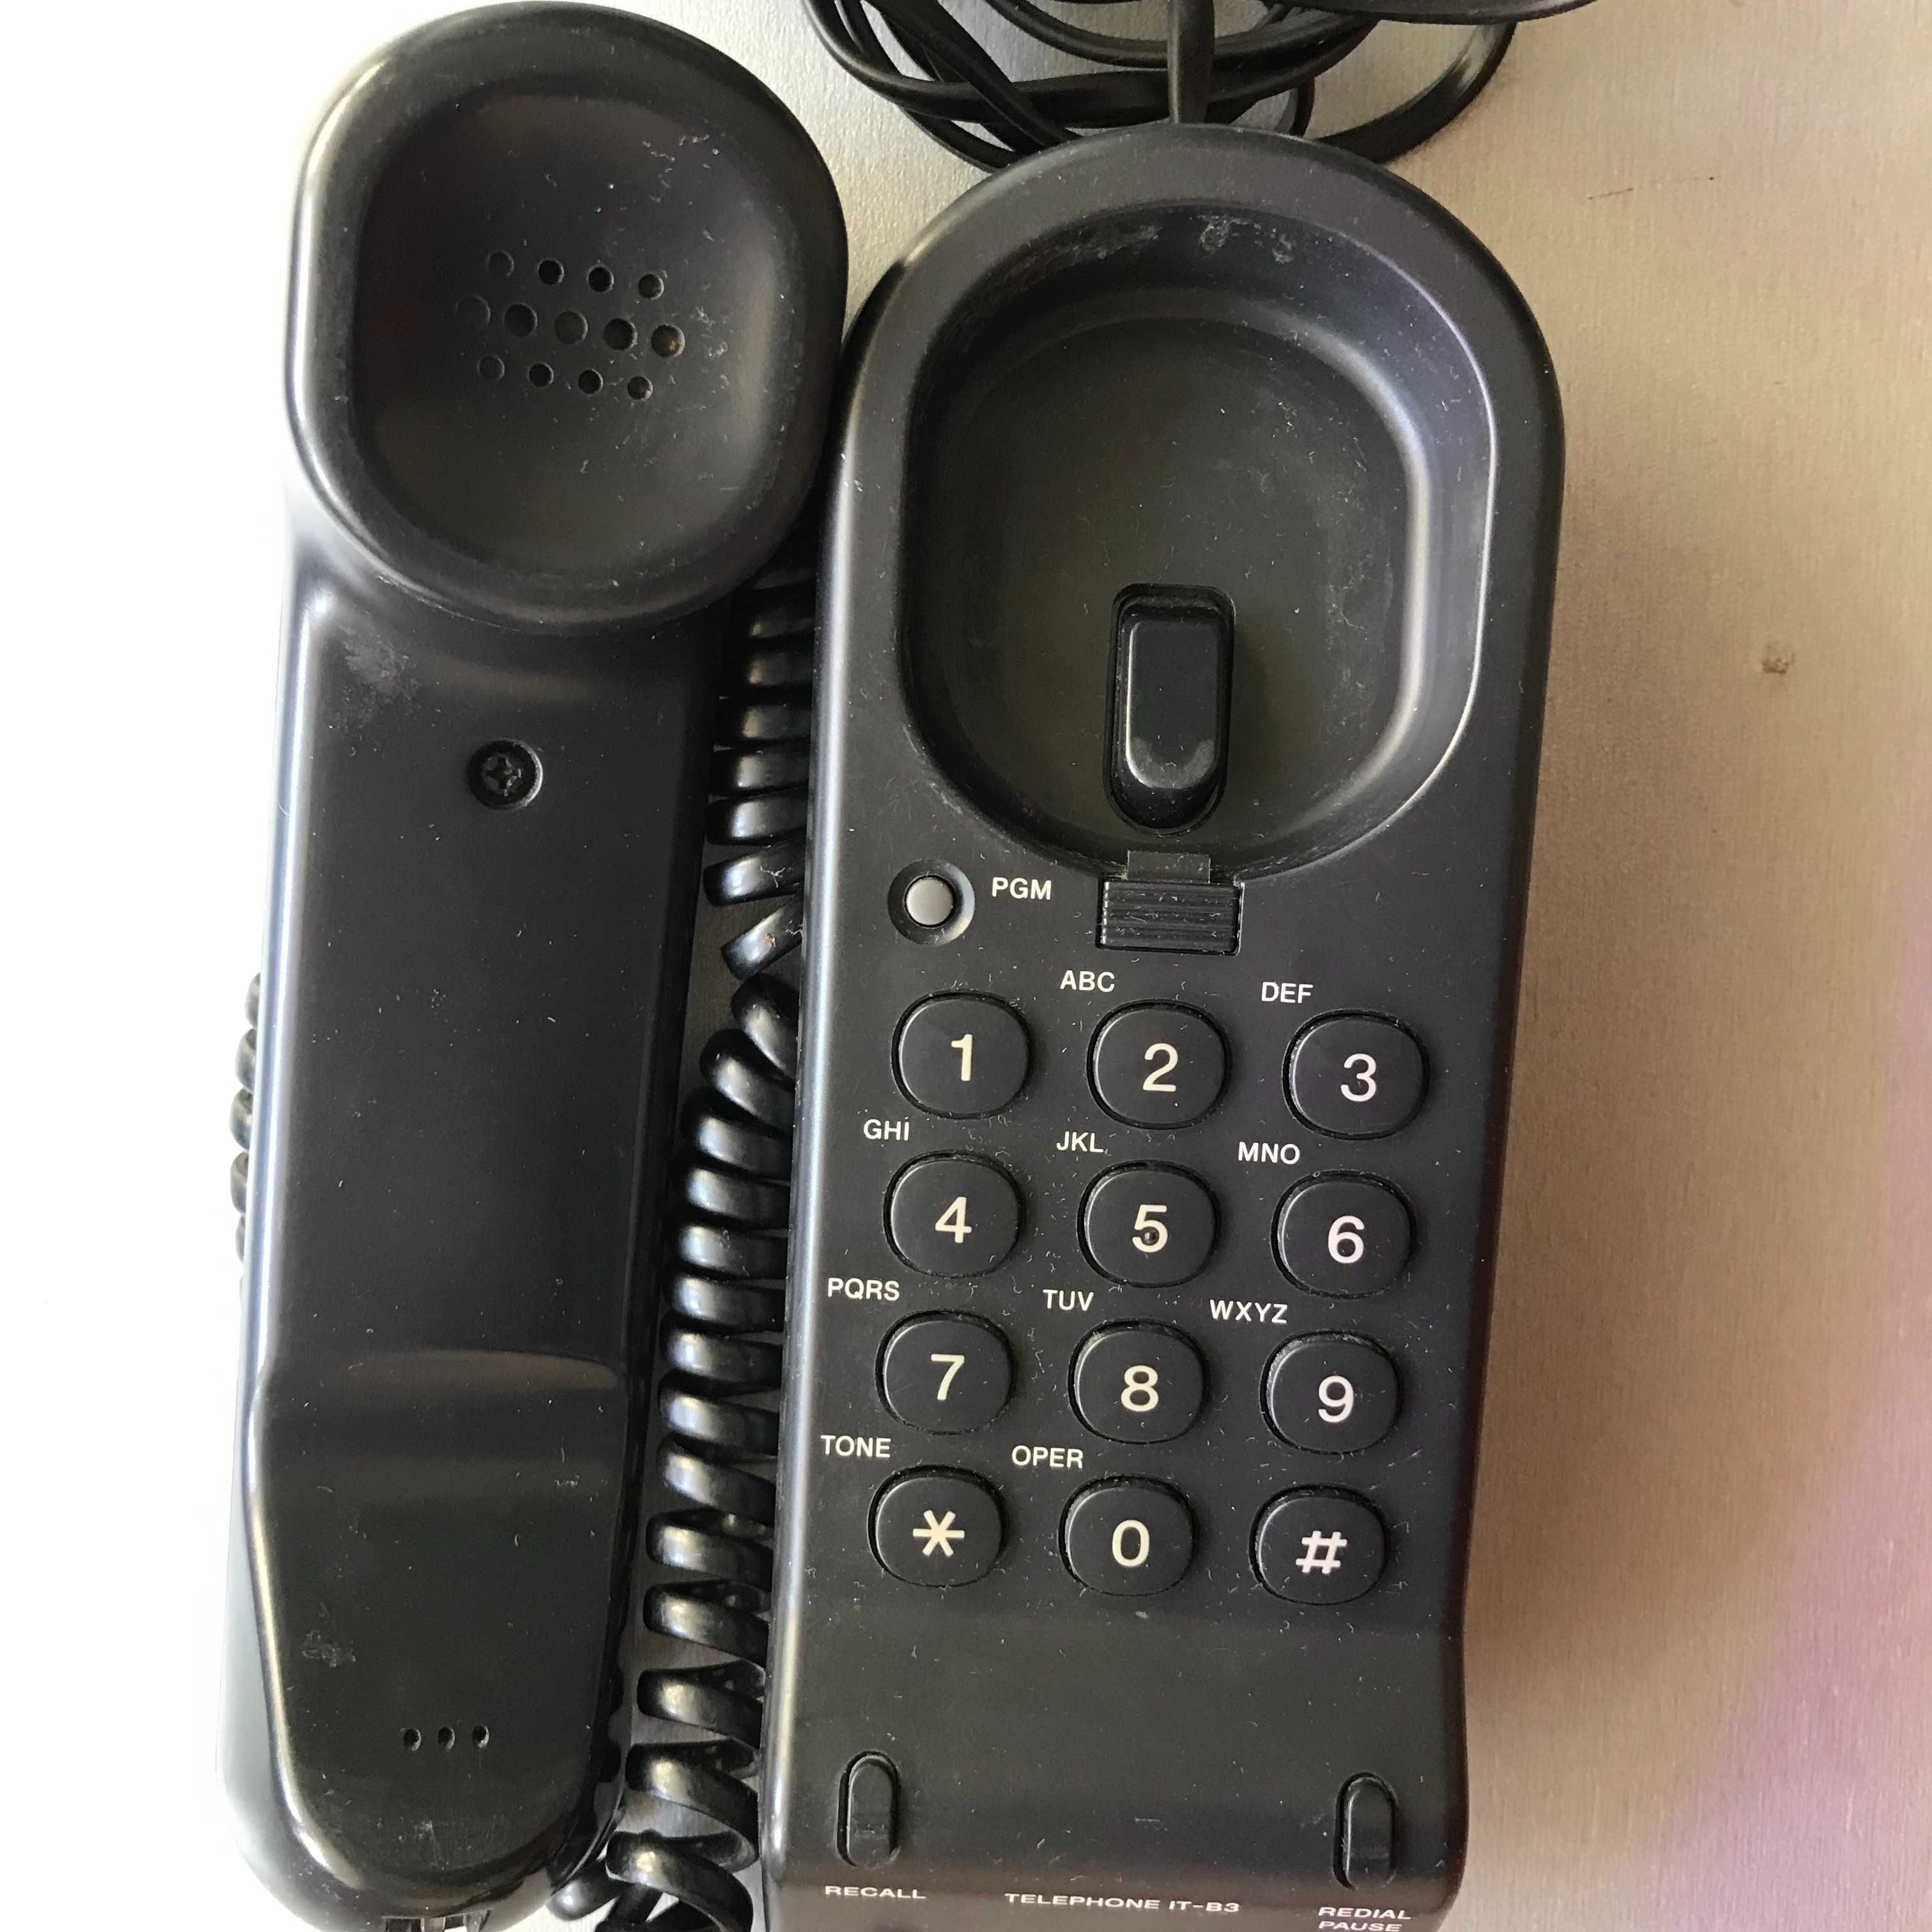 Настенный кнопочный телефонный аппарат SONY IT-B3